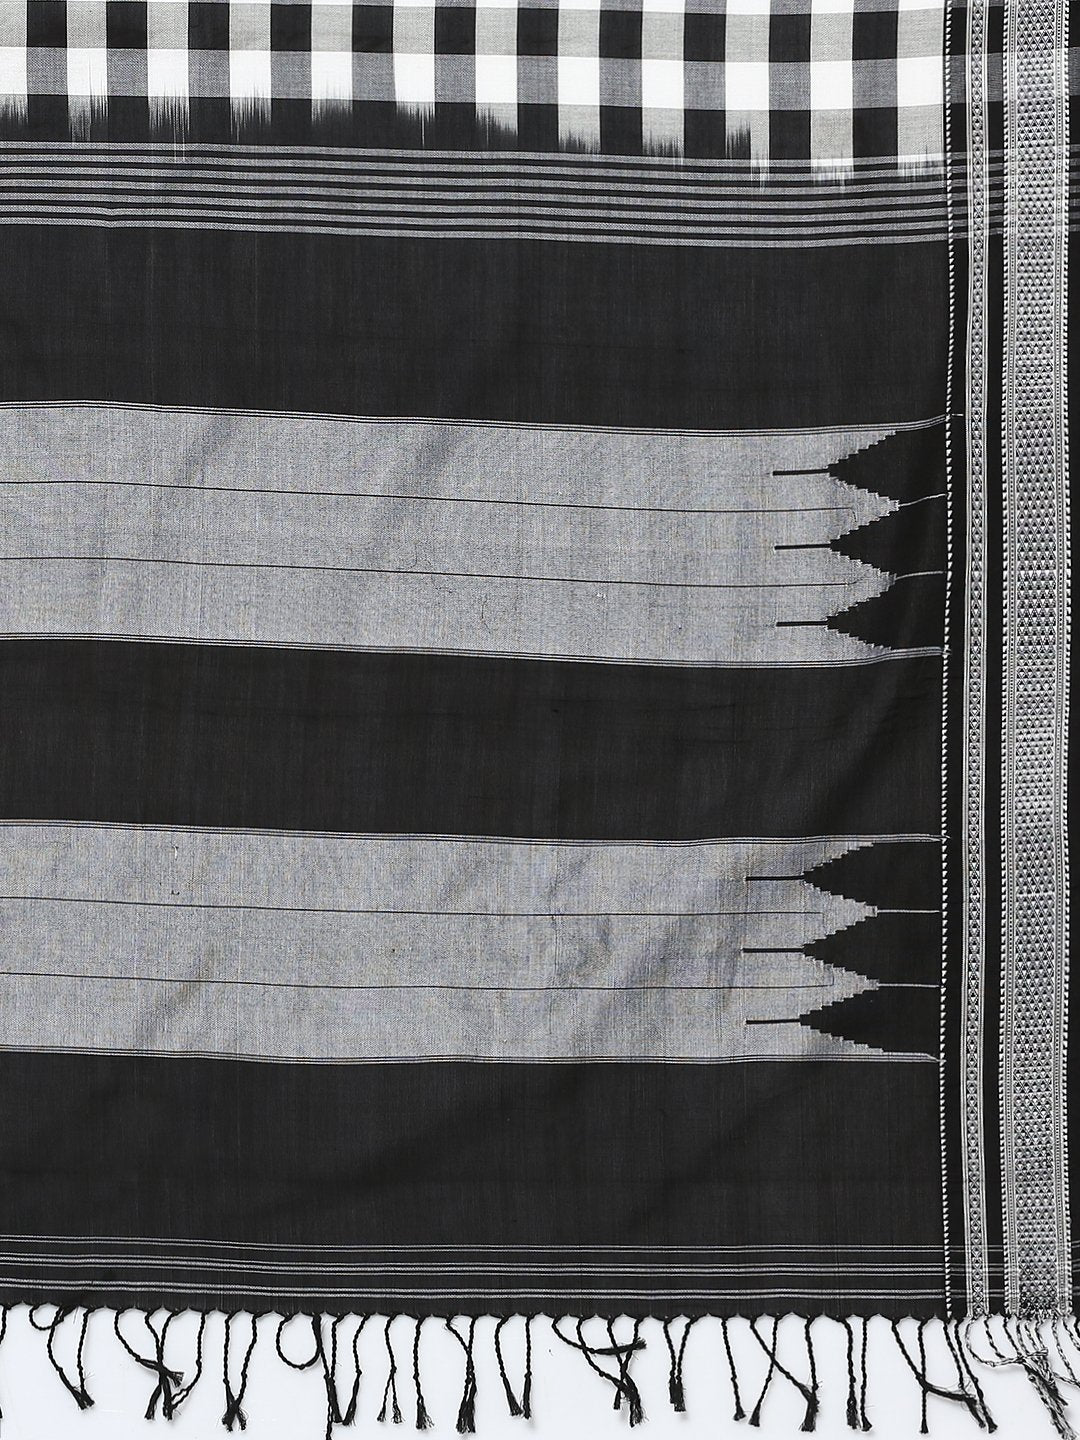 Black & white checkered ilkal cotton saree